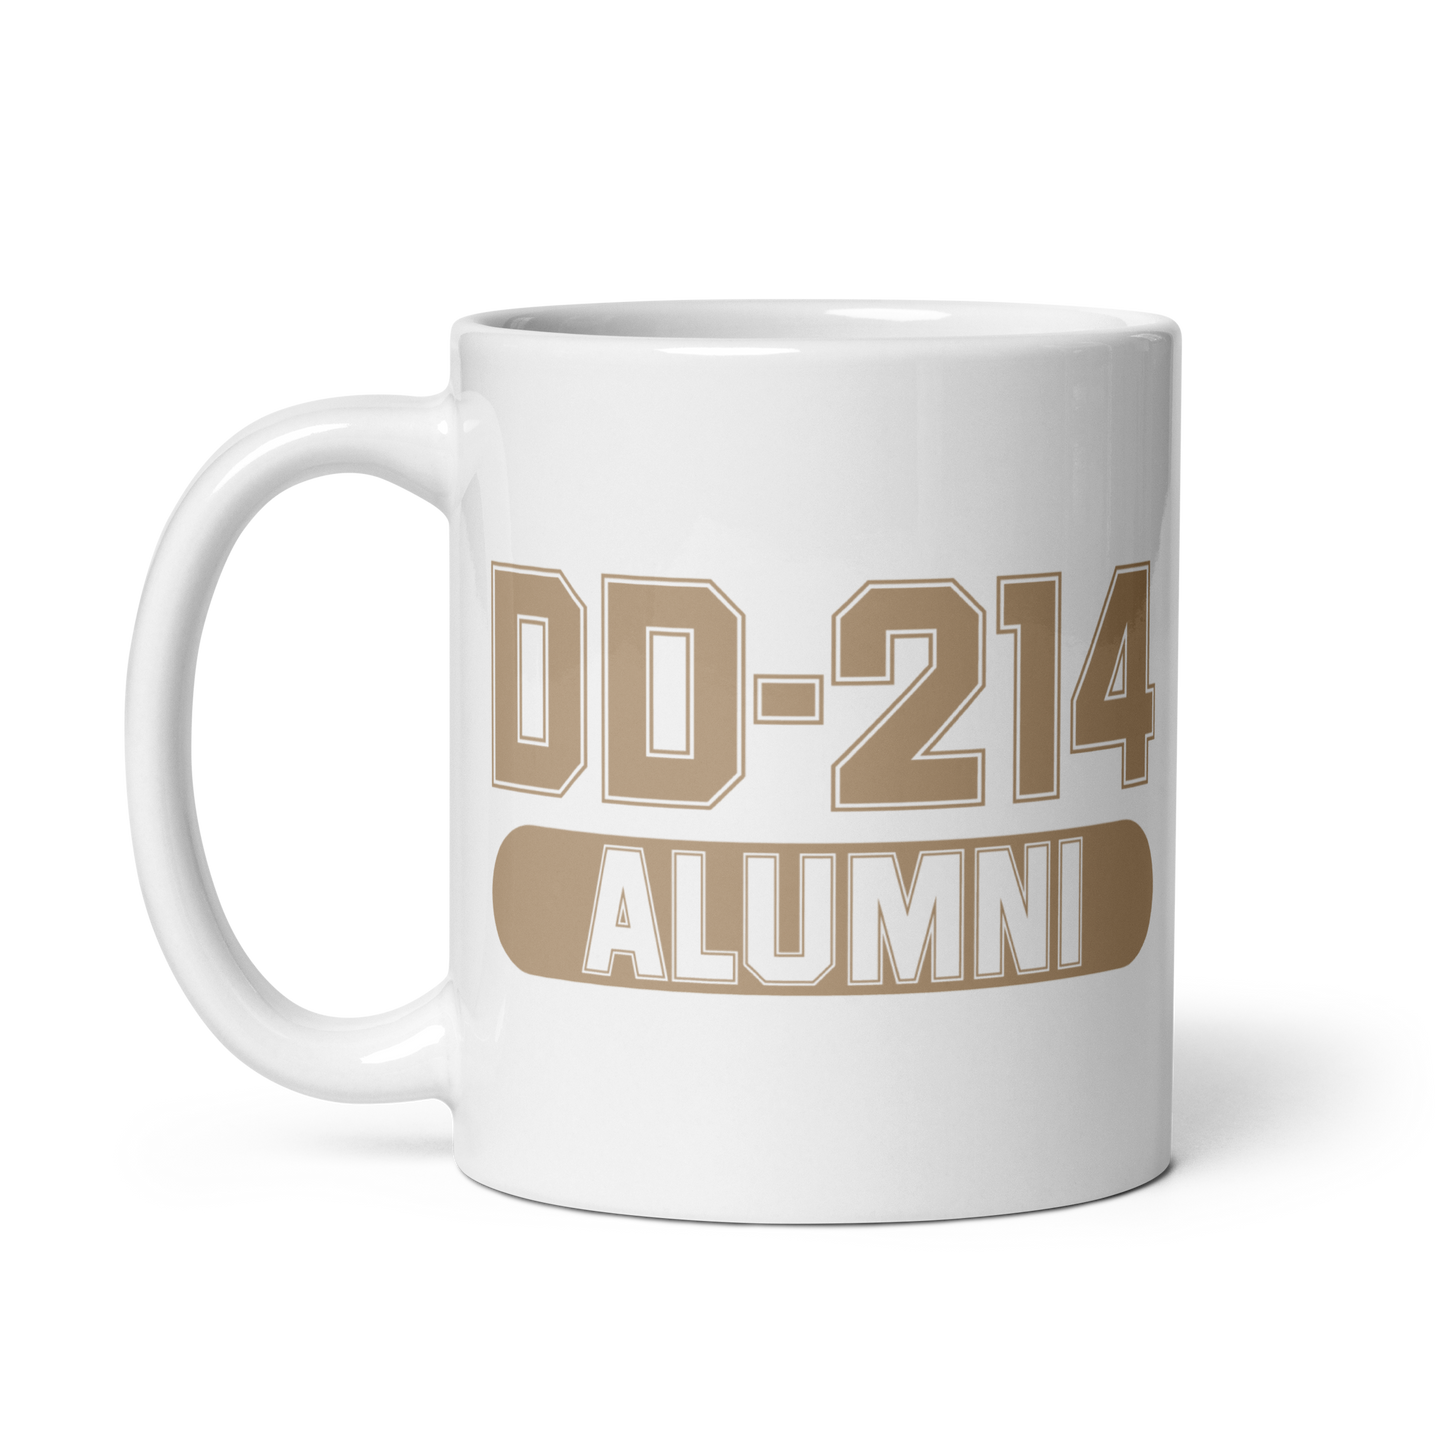 DD-214 Alumni Mug